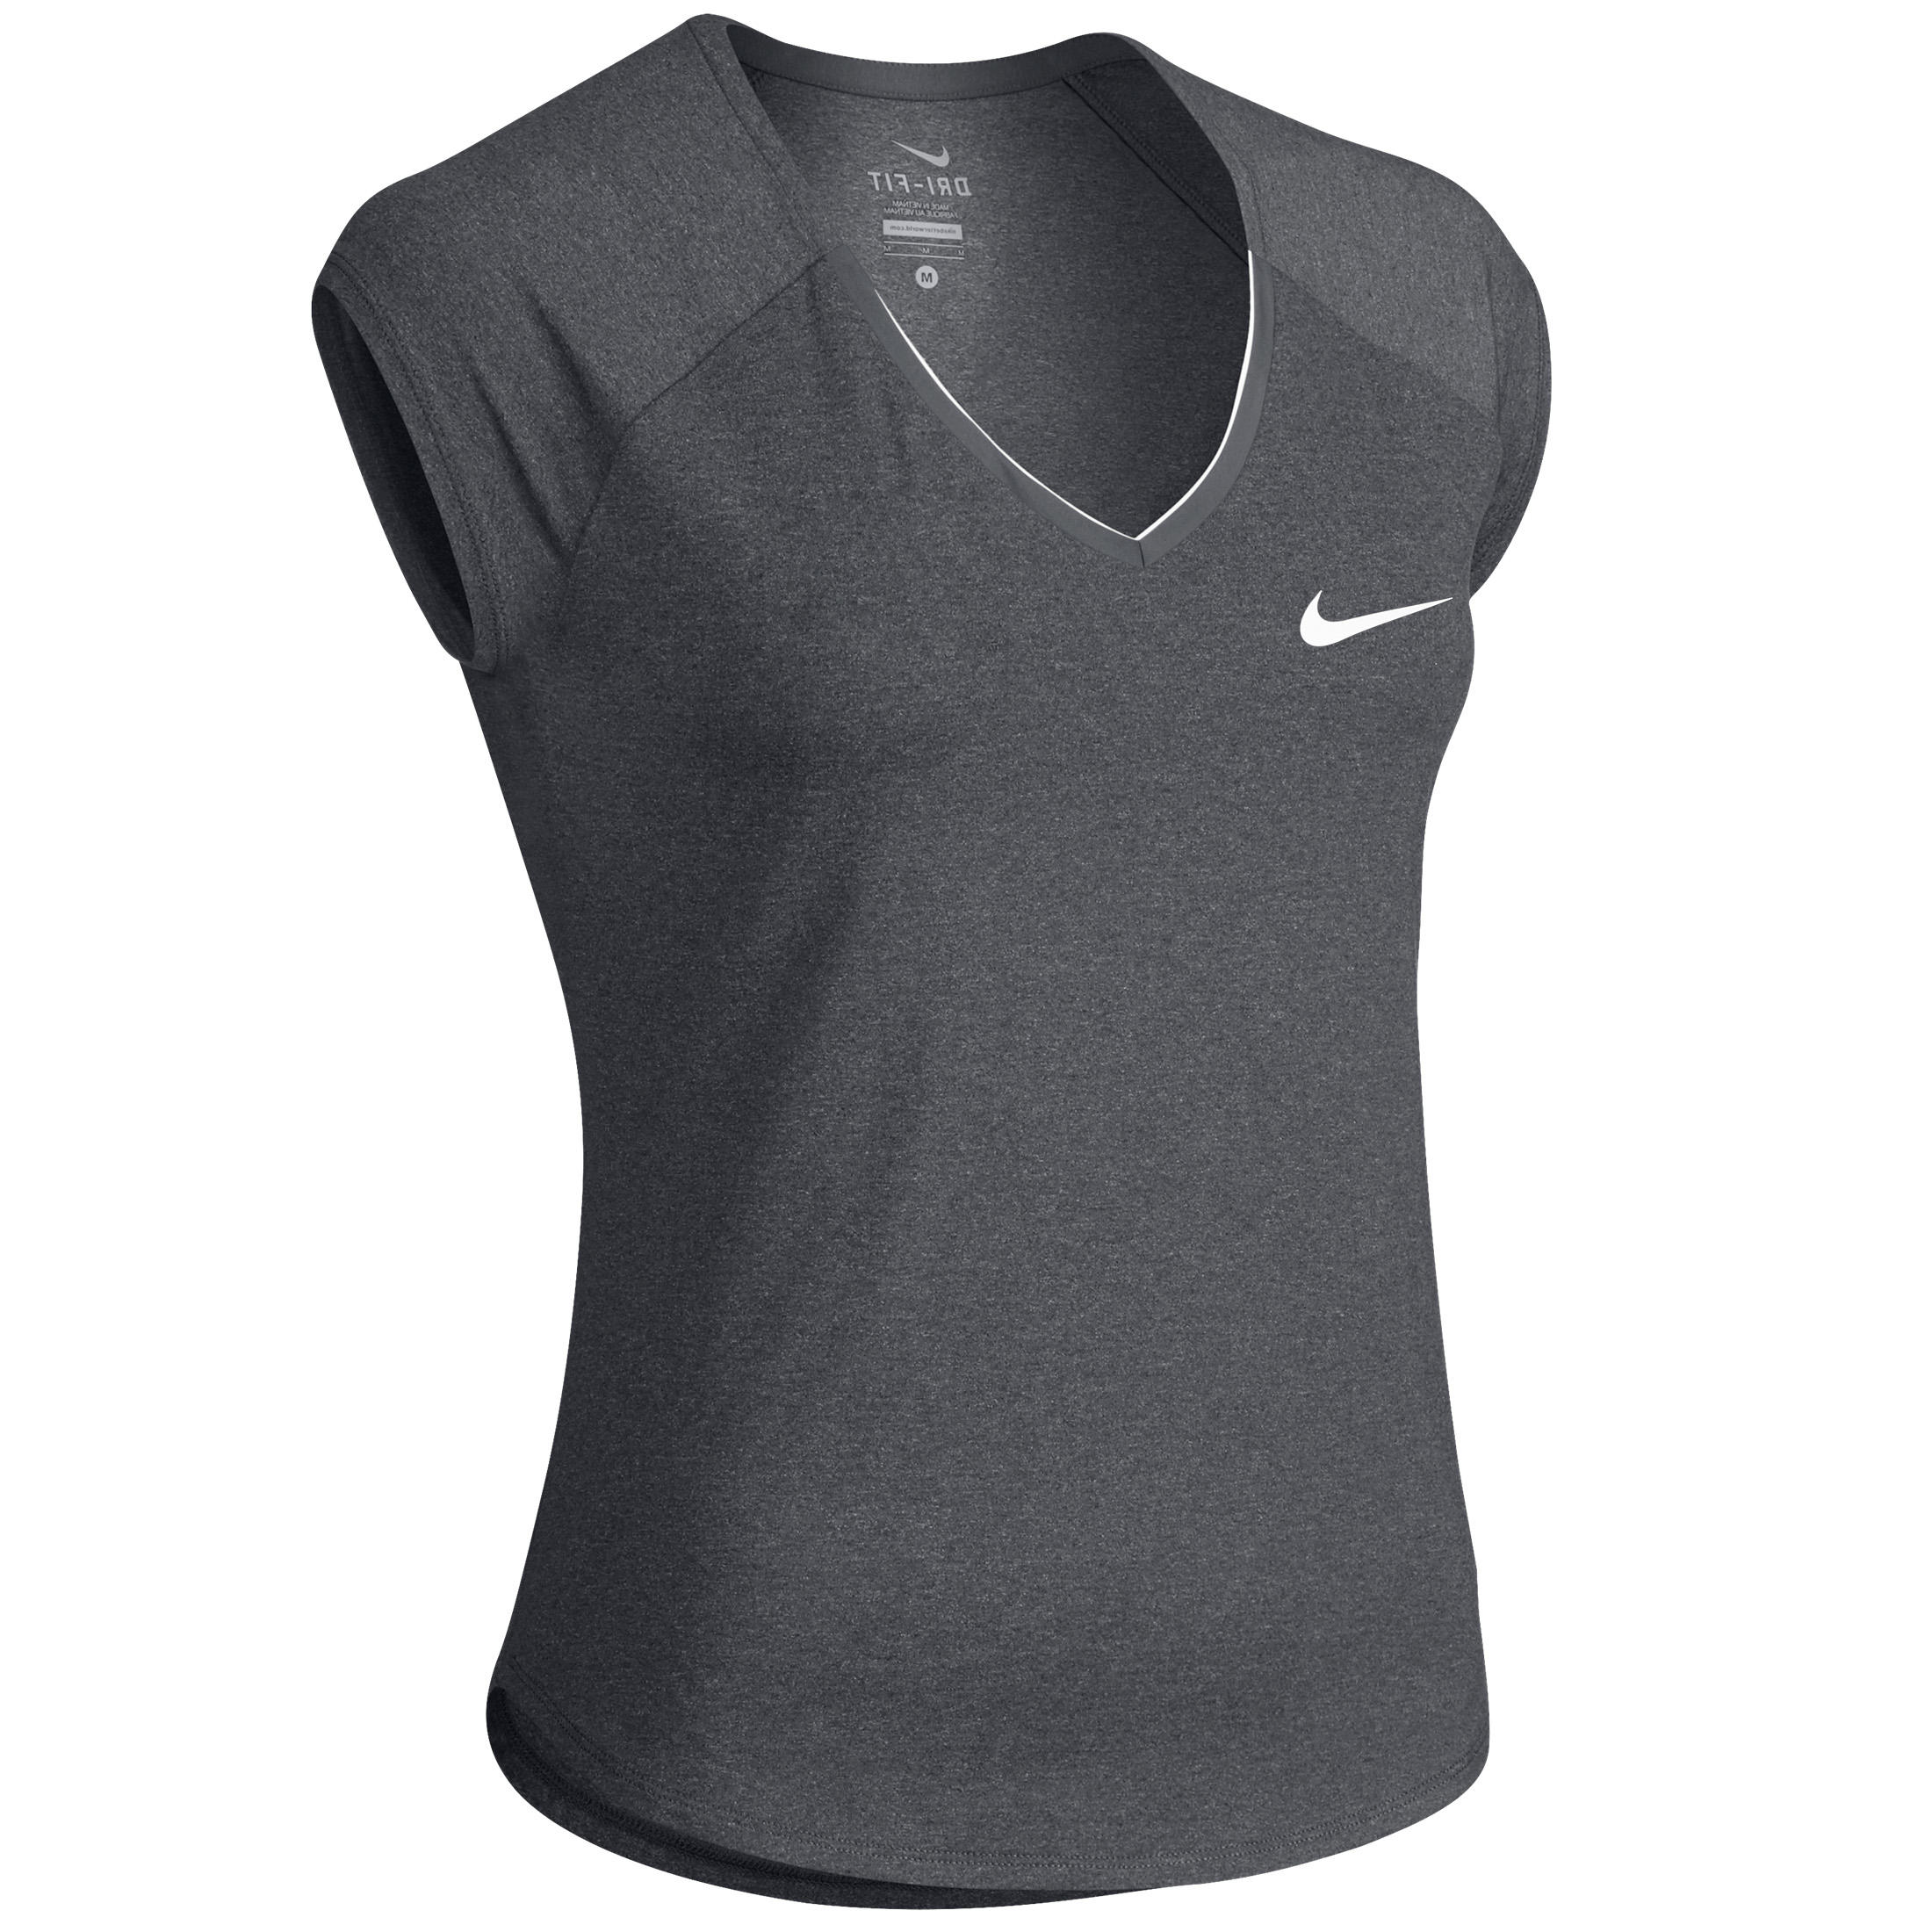 Nike Women's Tennis Badminton Table Squash Padel Top - Grey